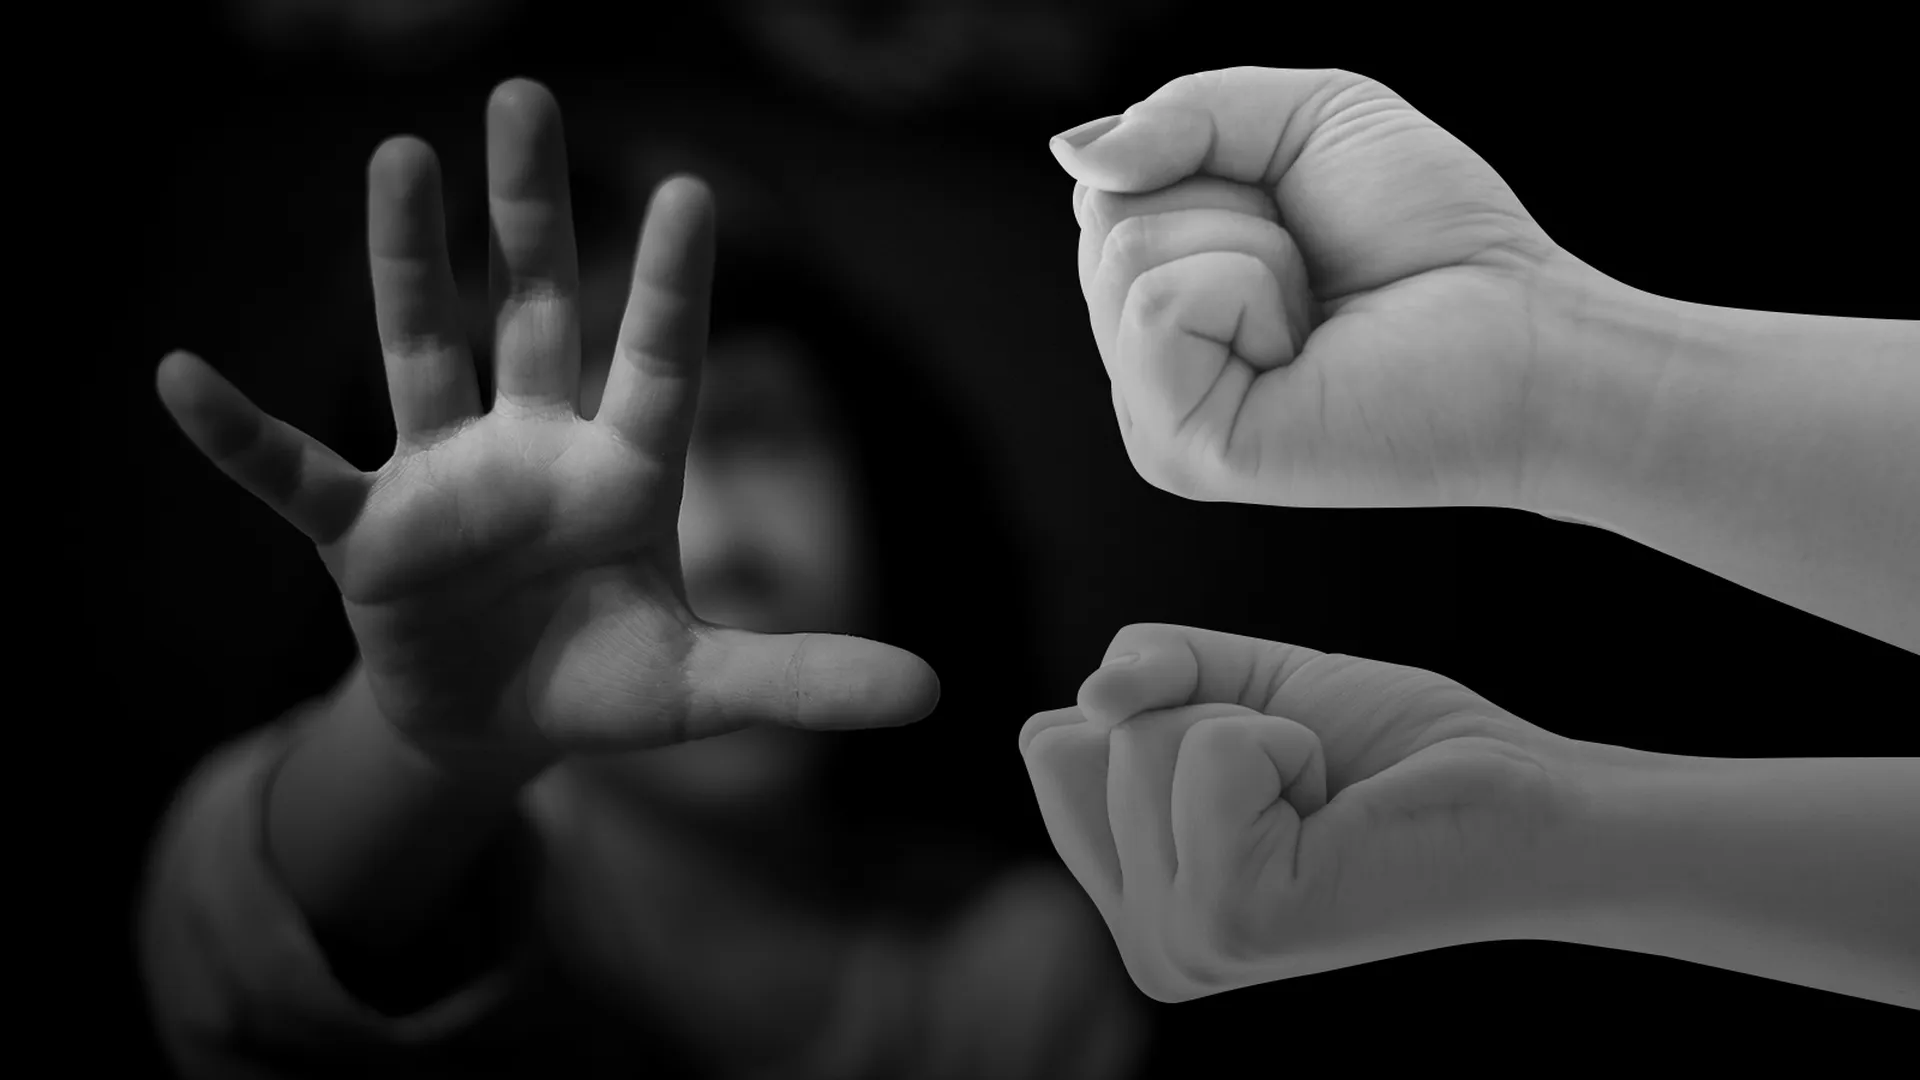 Руки взрослых, сжатые в кулаки и руки ребенка, который старается остановить насилие